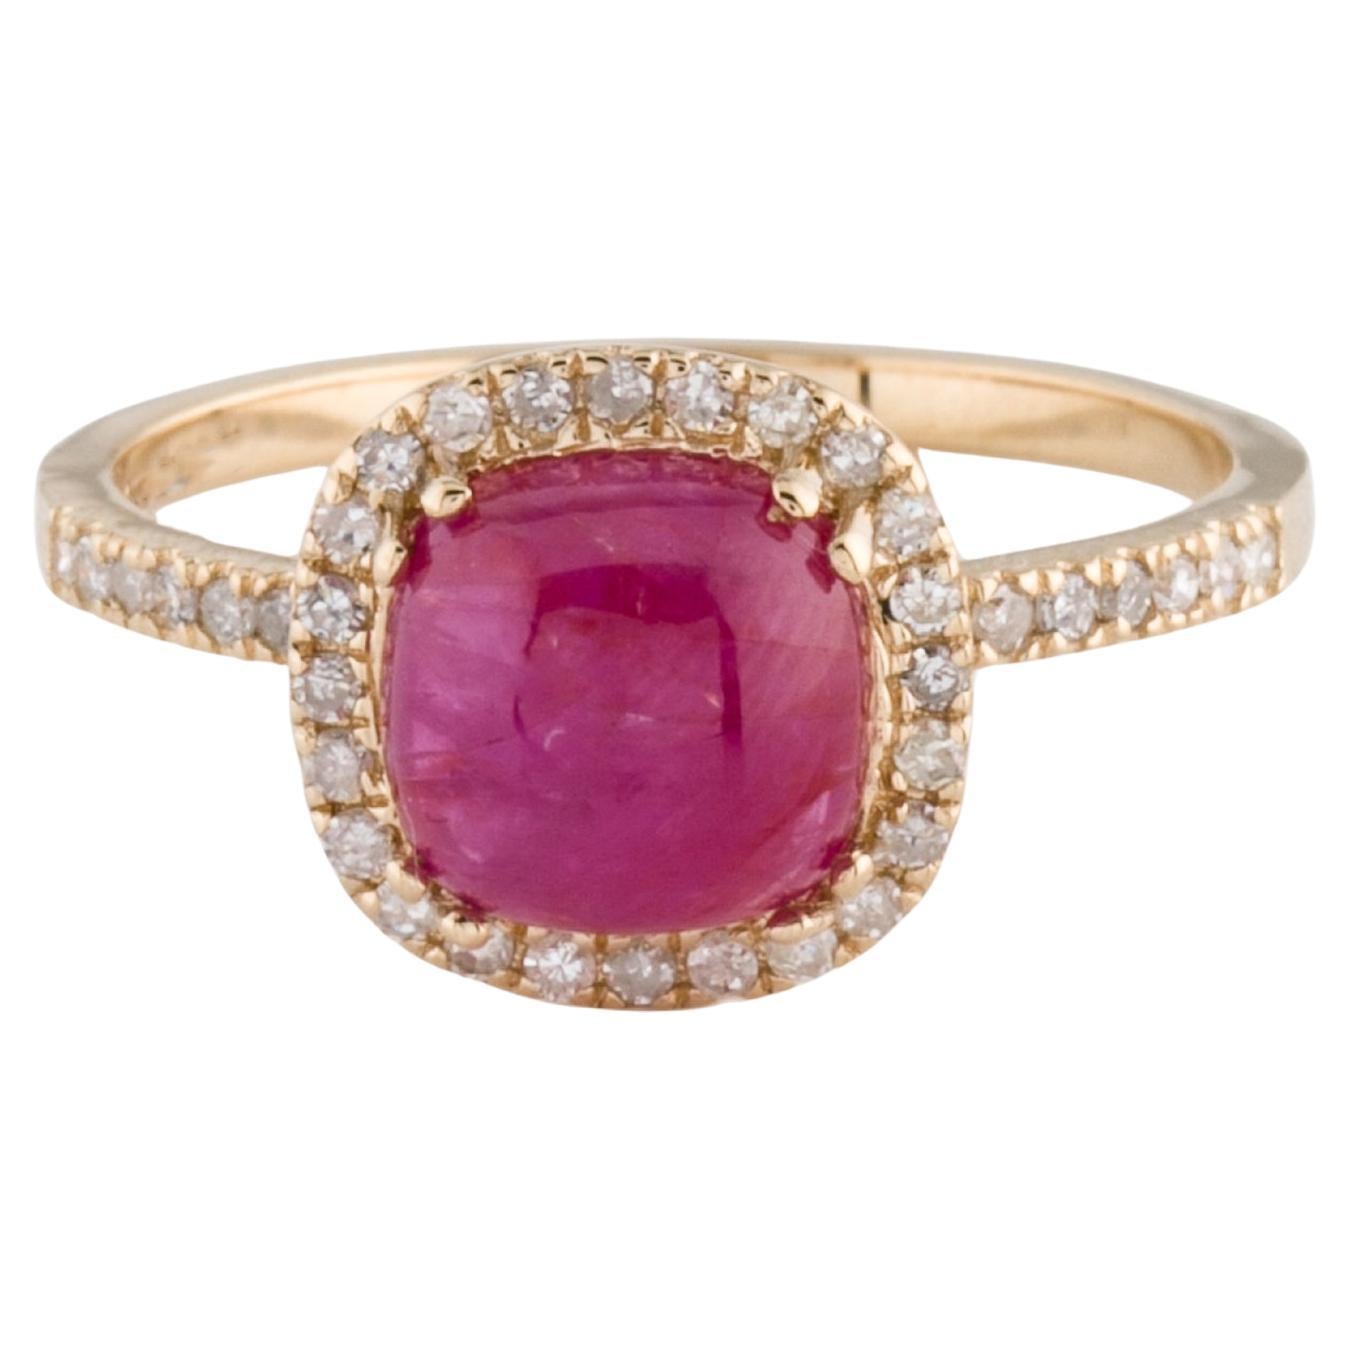 Elegant 14K Ruby & Diamond Cocktail Ring - Size 8 - Luxurious Gemstone Jewelry